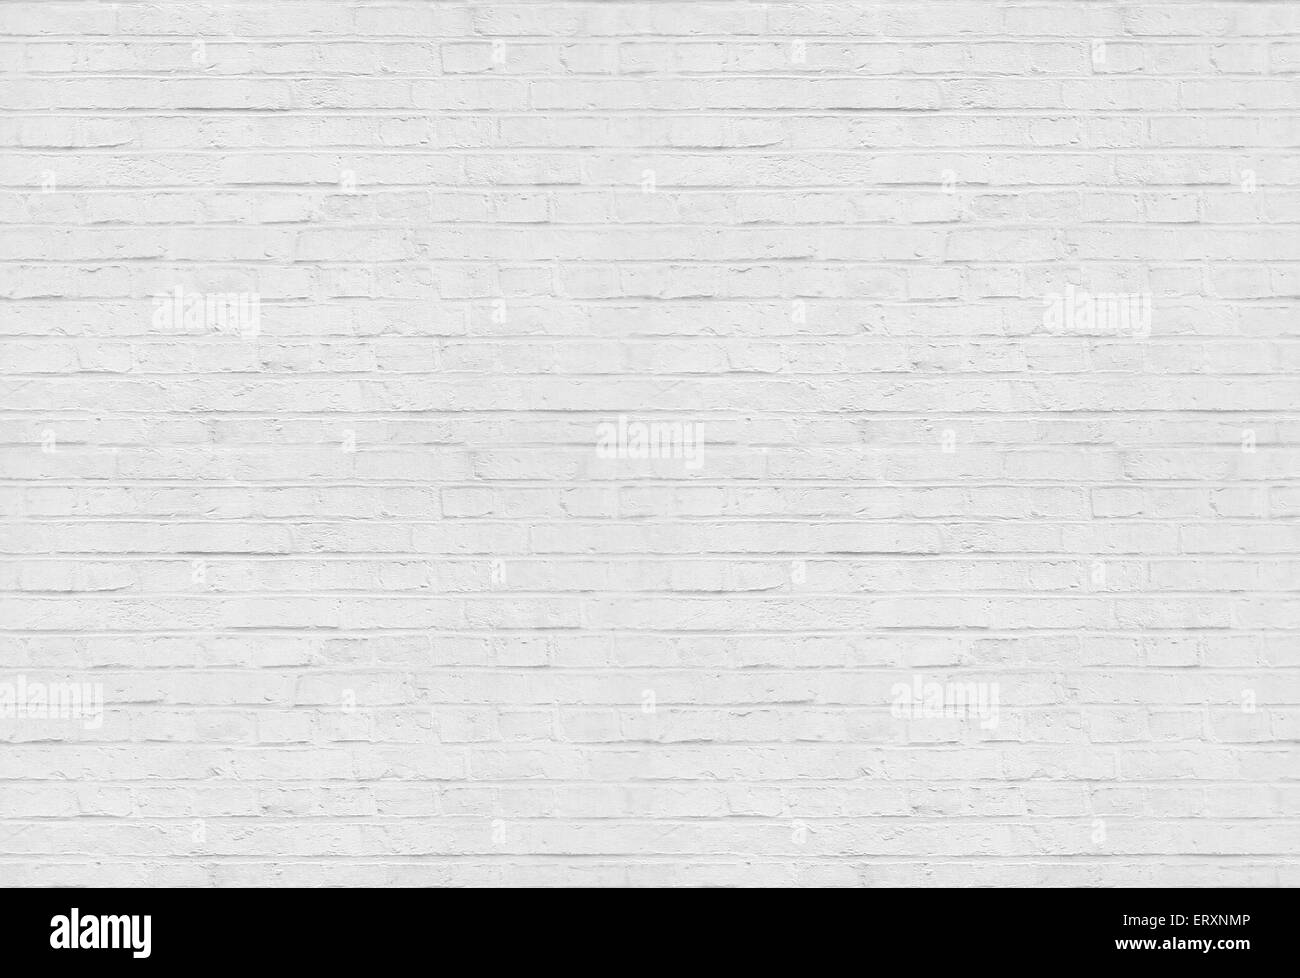 Seamless white brick wall pattern background Stock Photo